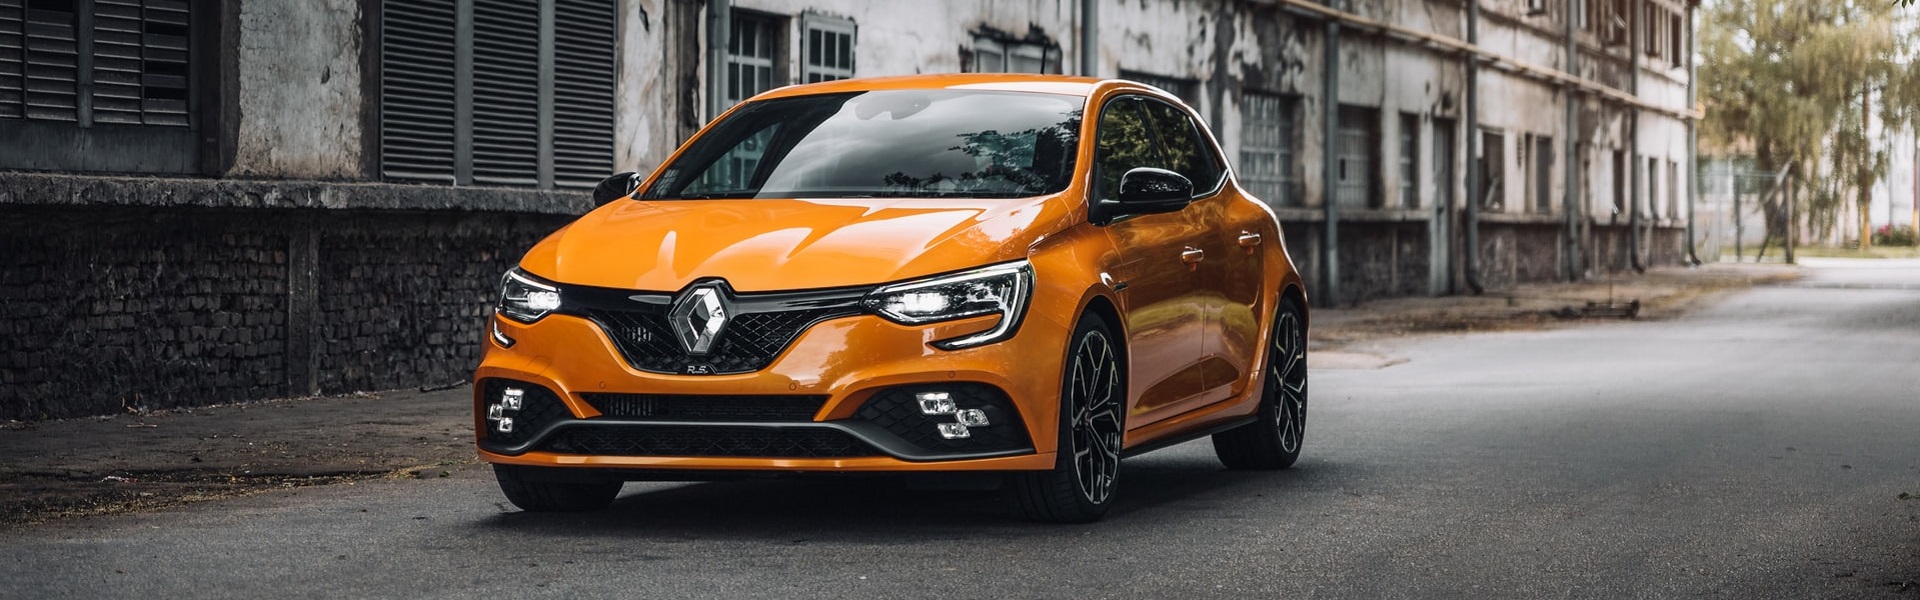 Iznajmljivanje auto-dizalica | Renault delovi